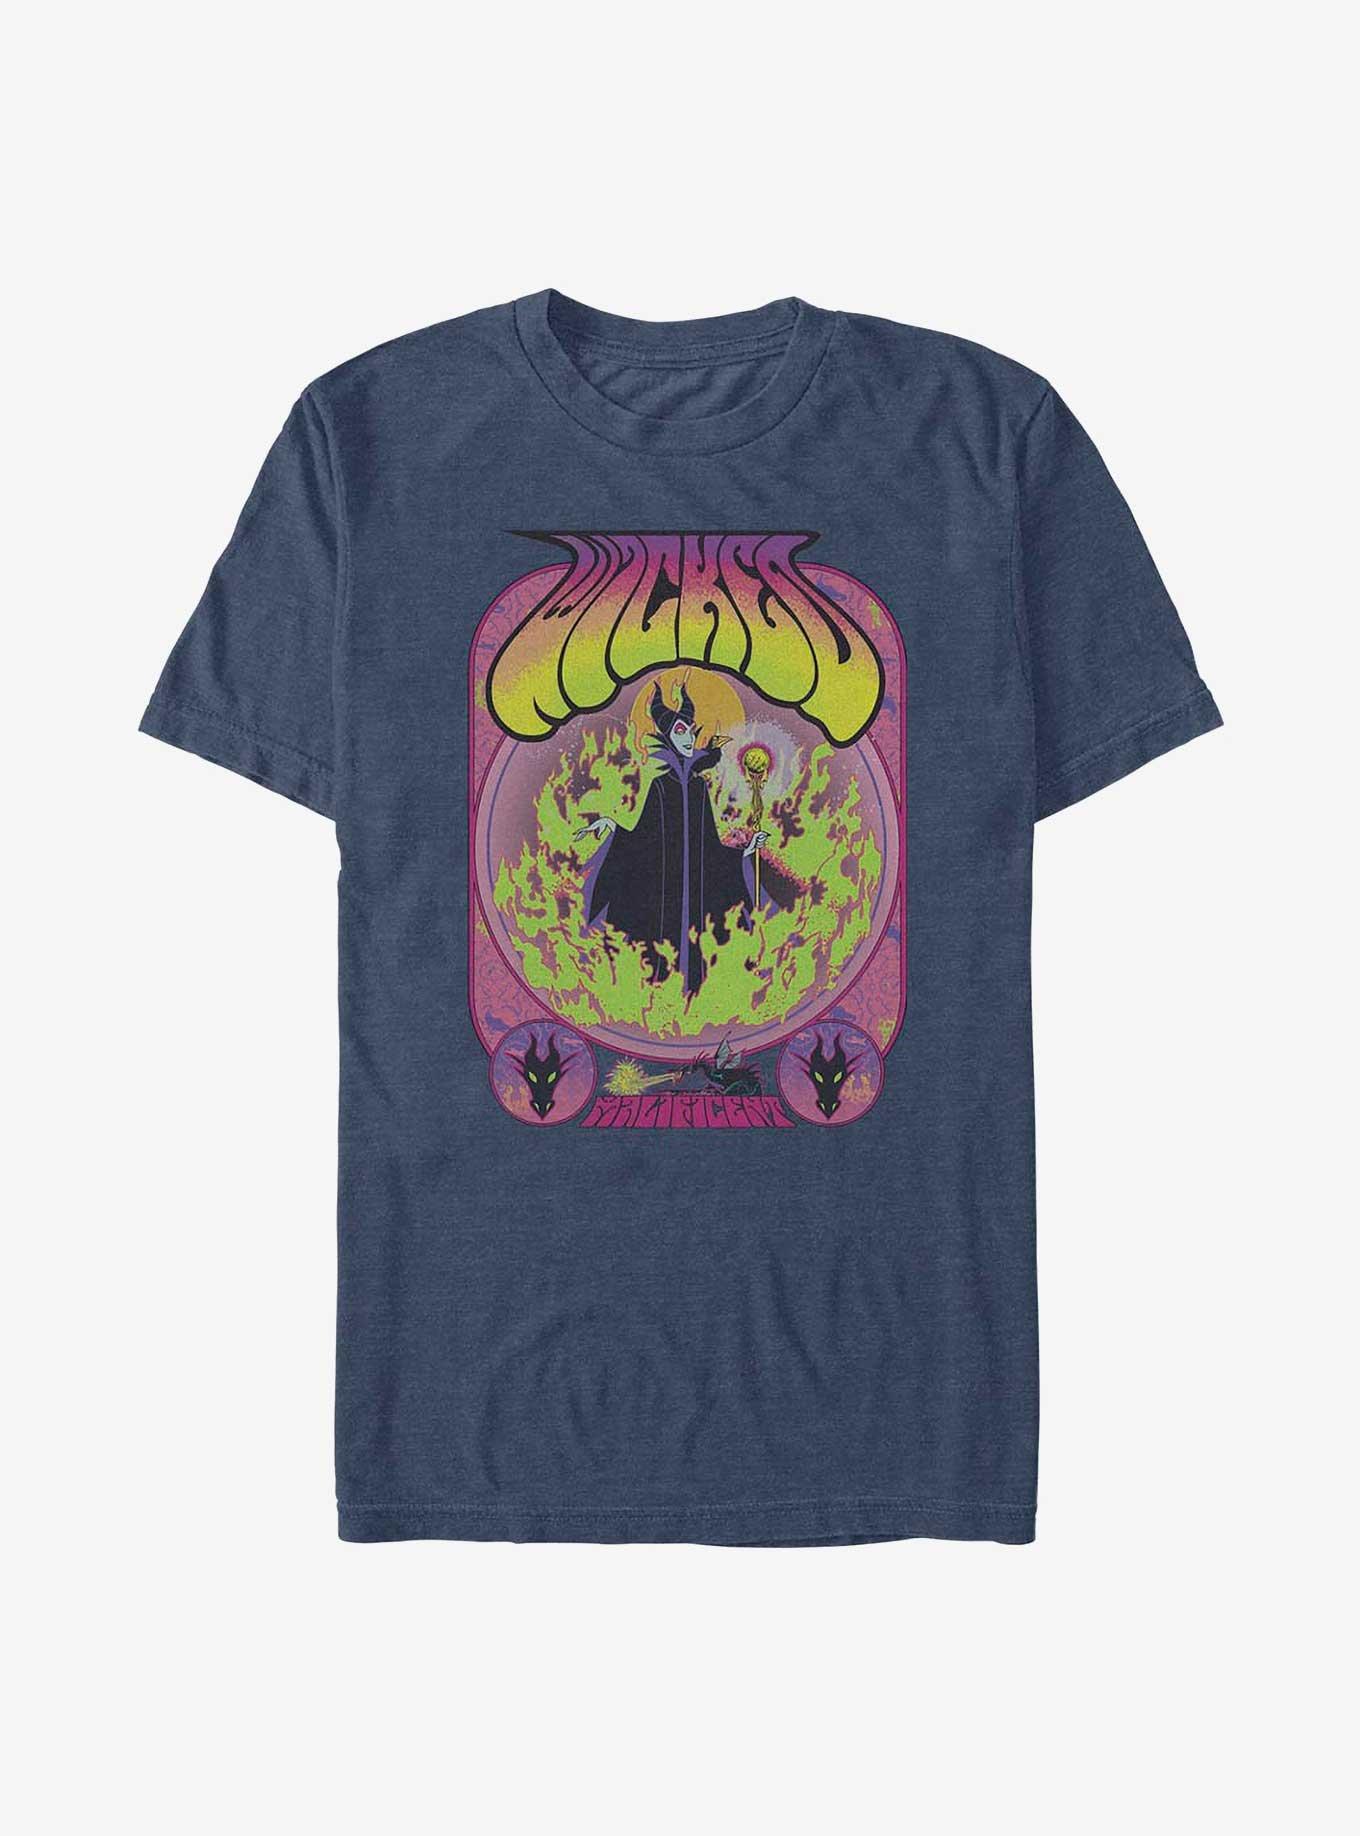 Disney Villains Maleficent T-Shirt